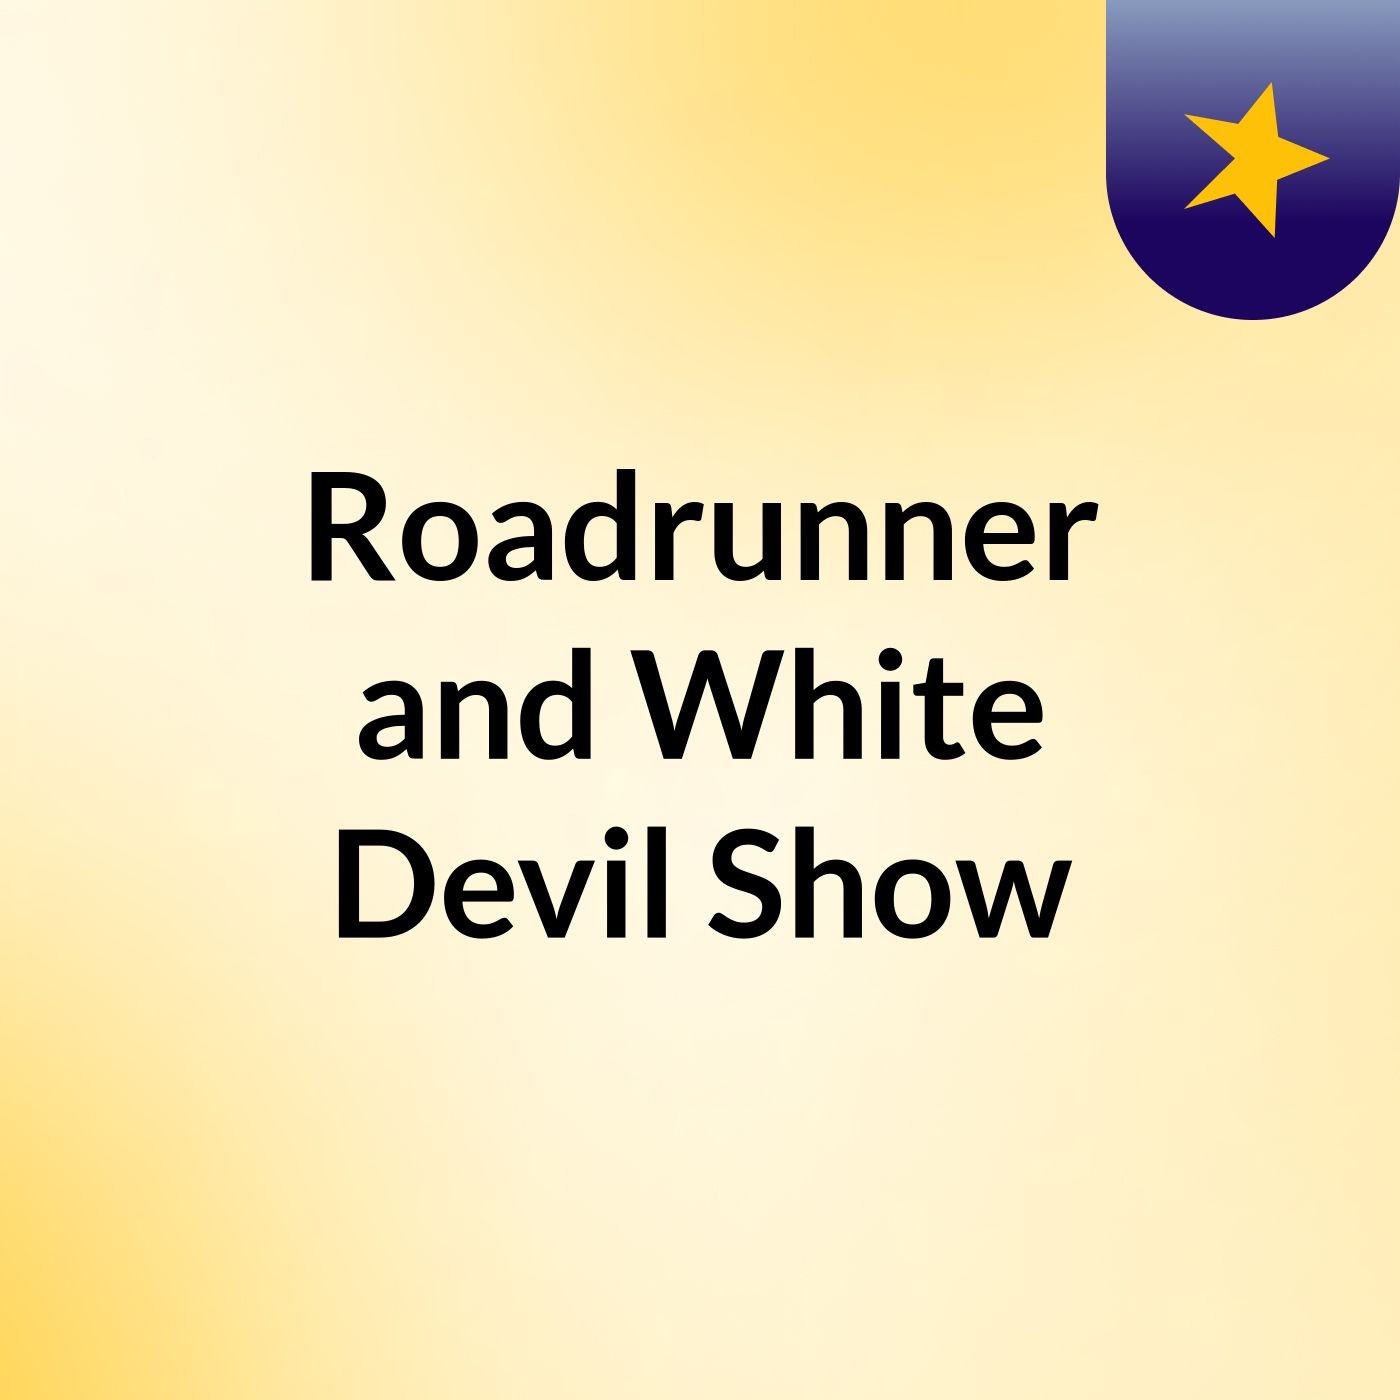 Roadrunner and White Devil Show